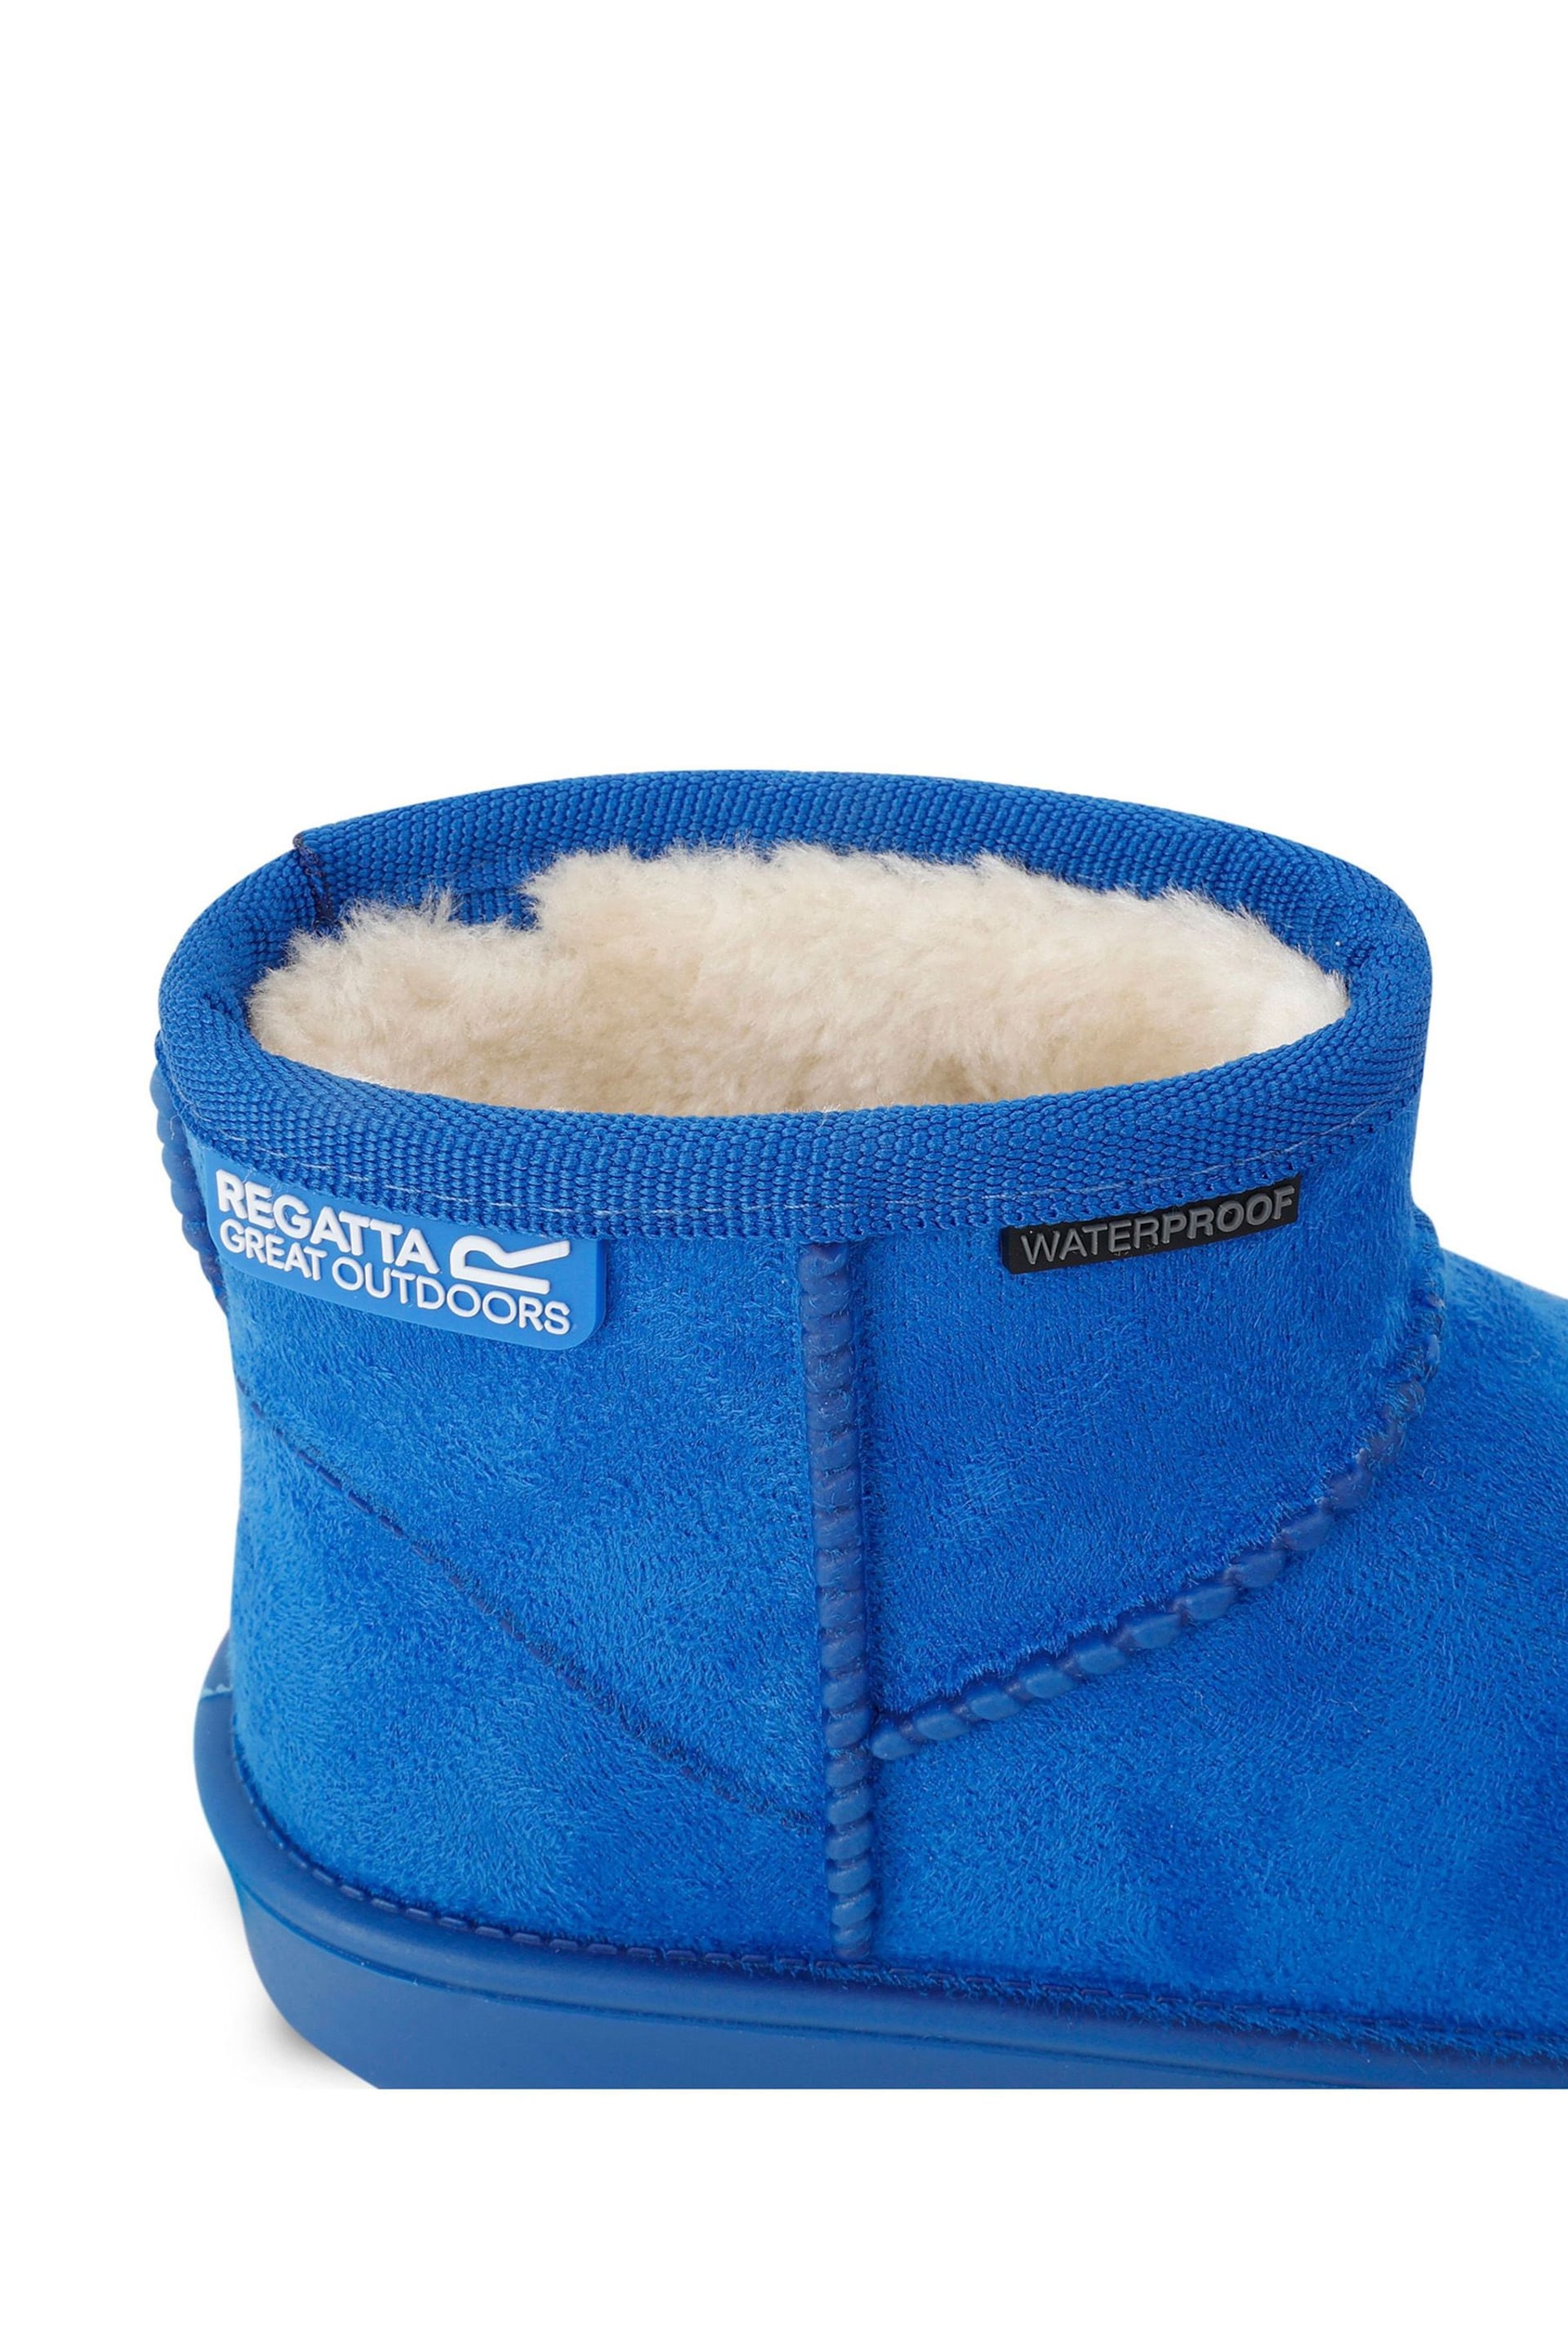 Regatta Blue Girls Risley Waterproof Faux Fur Lined Boots - Image 6 of 6